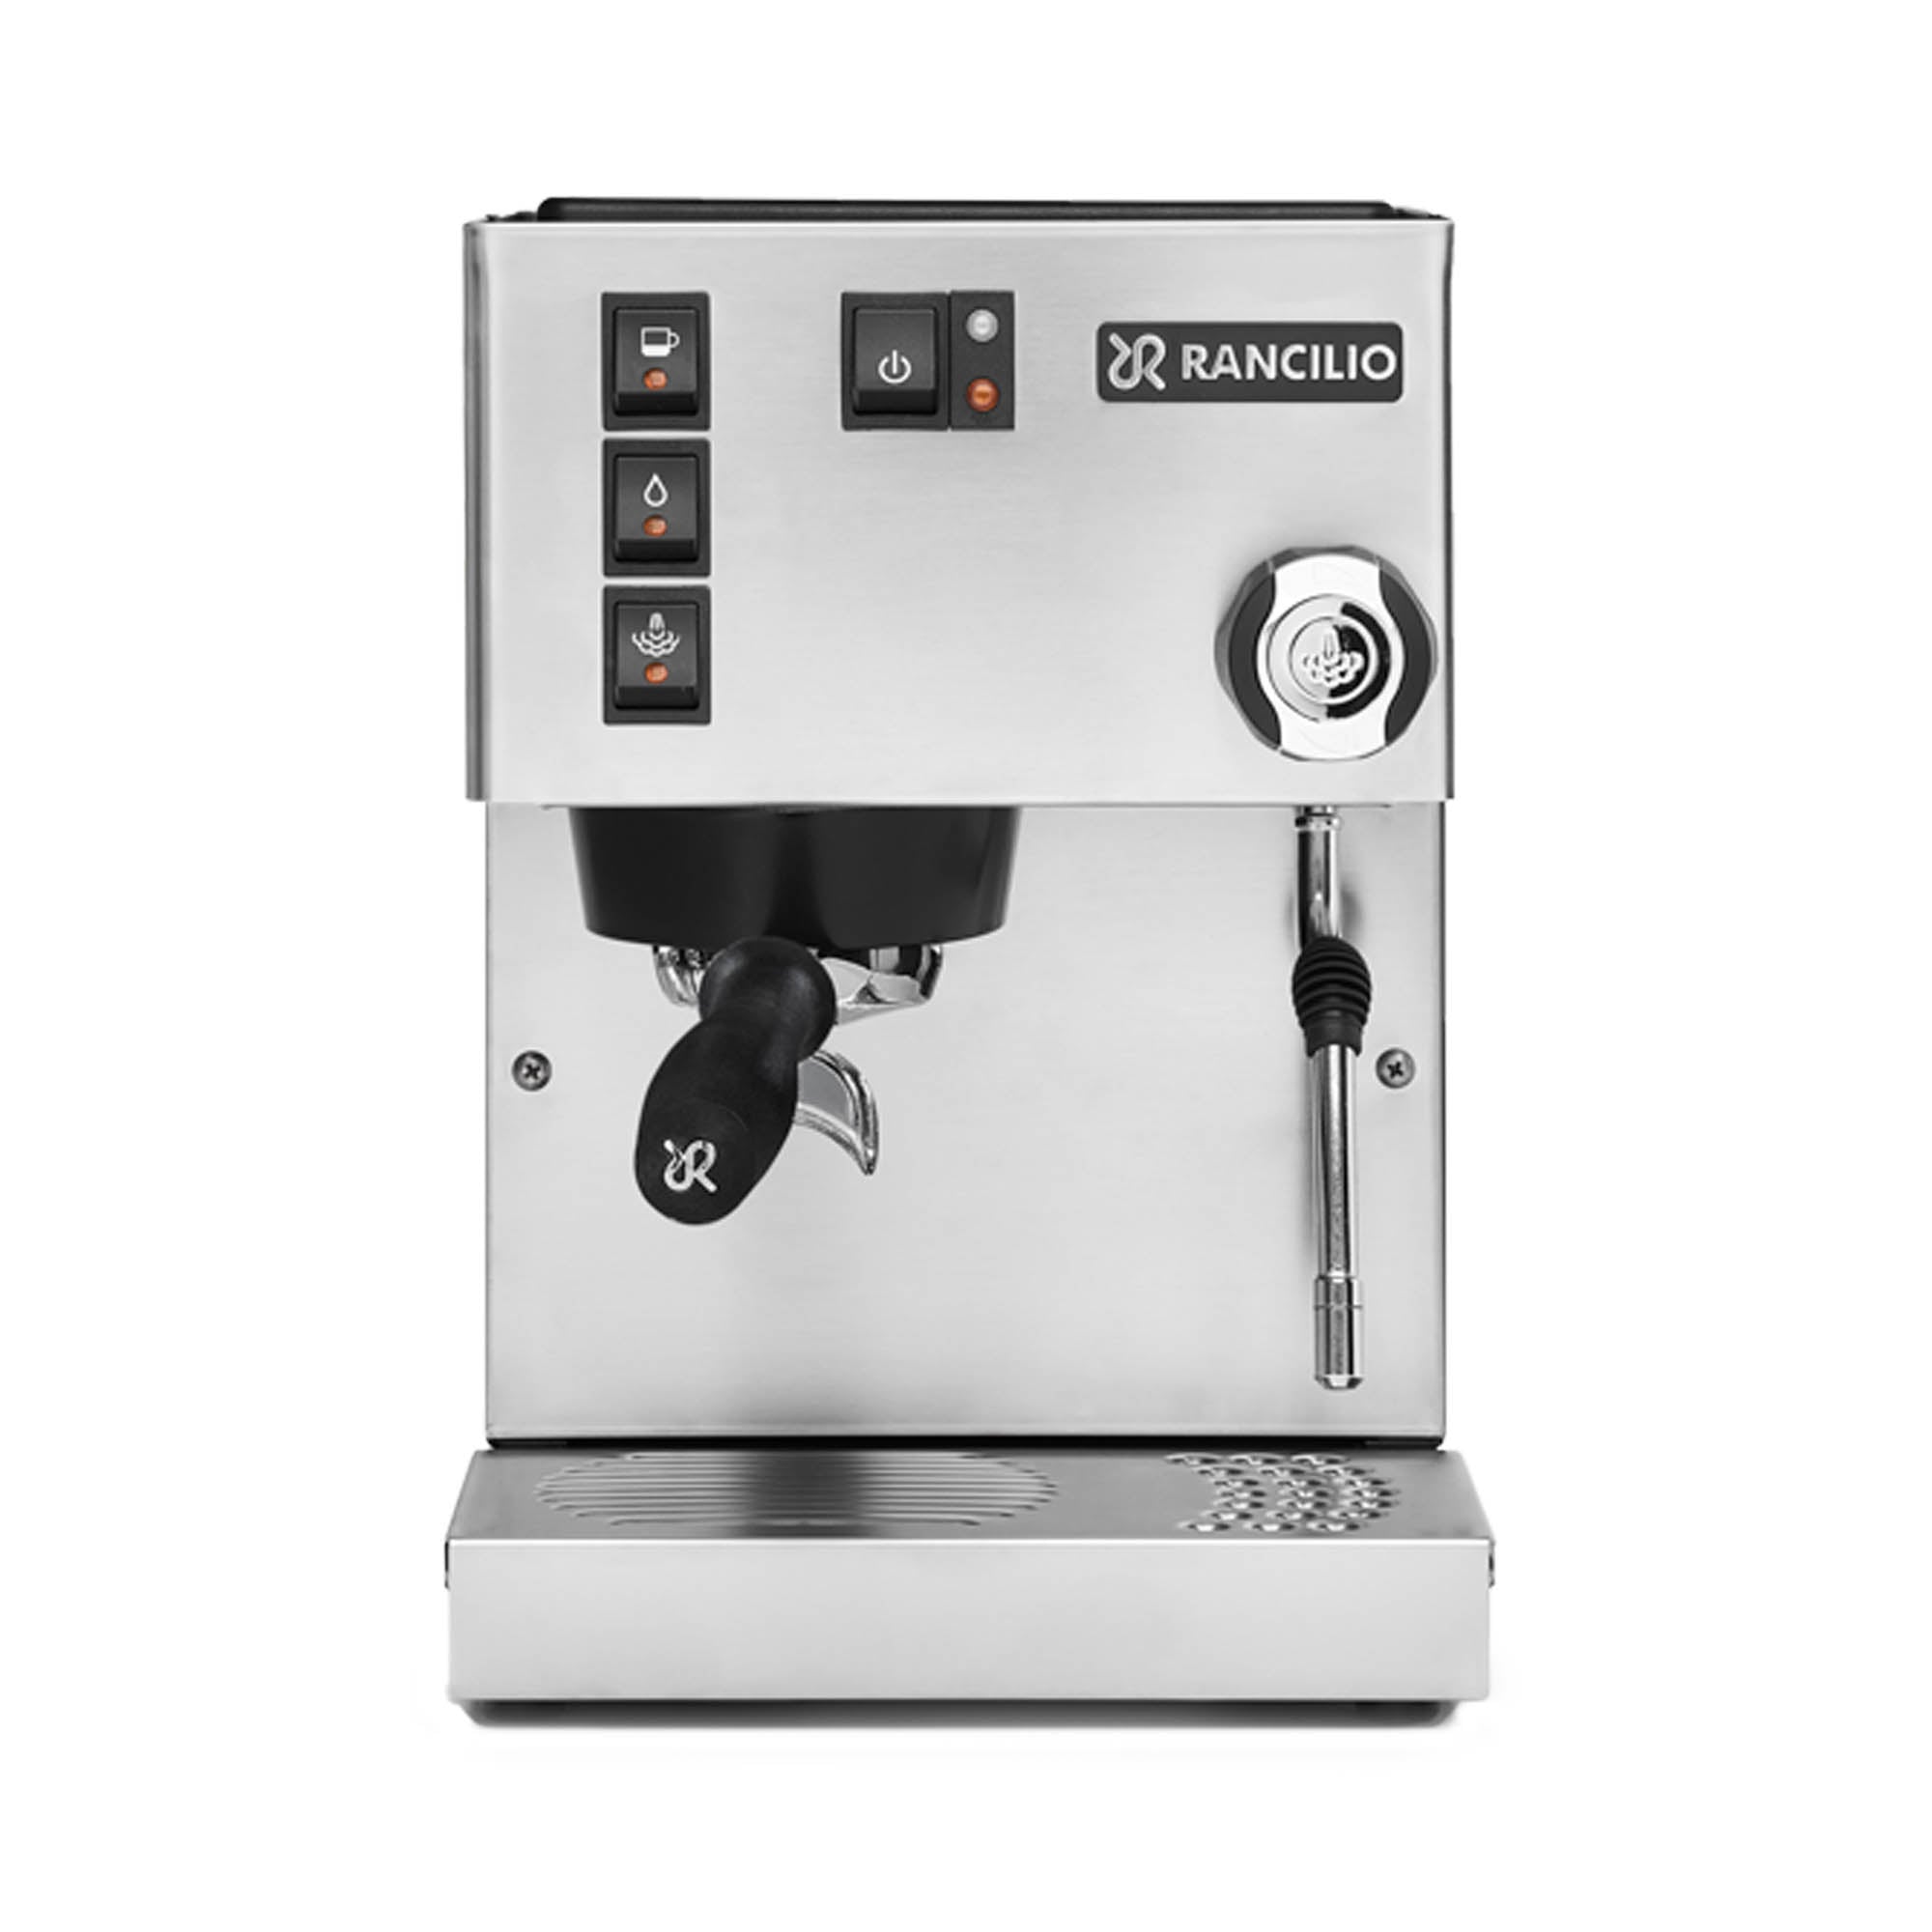 Rancilio Domestic Coffee Machines